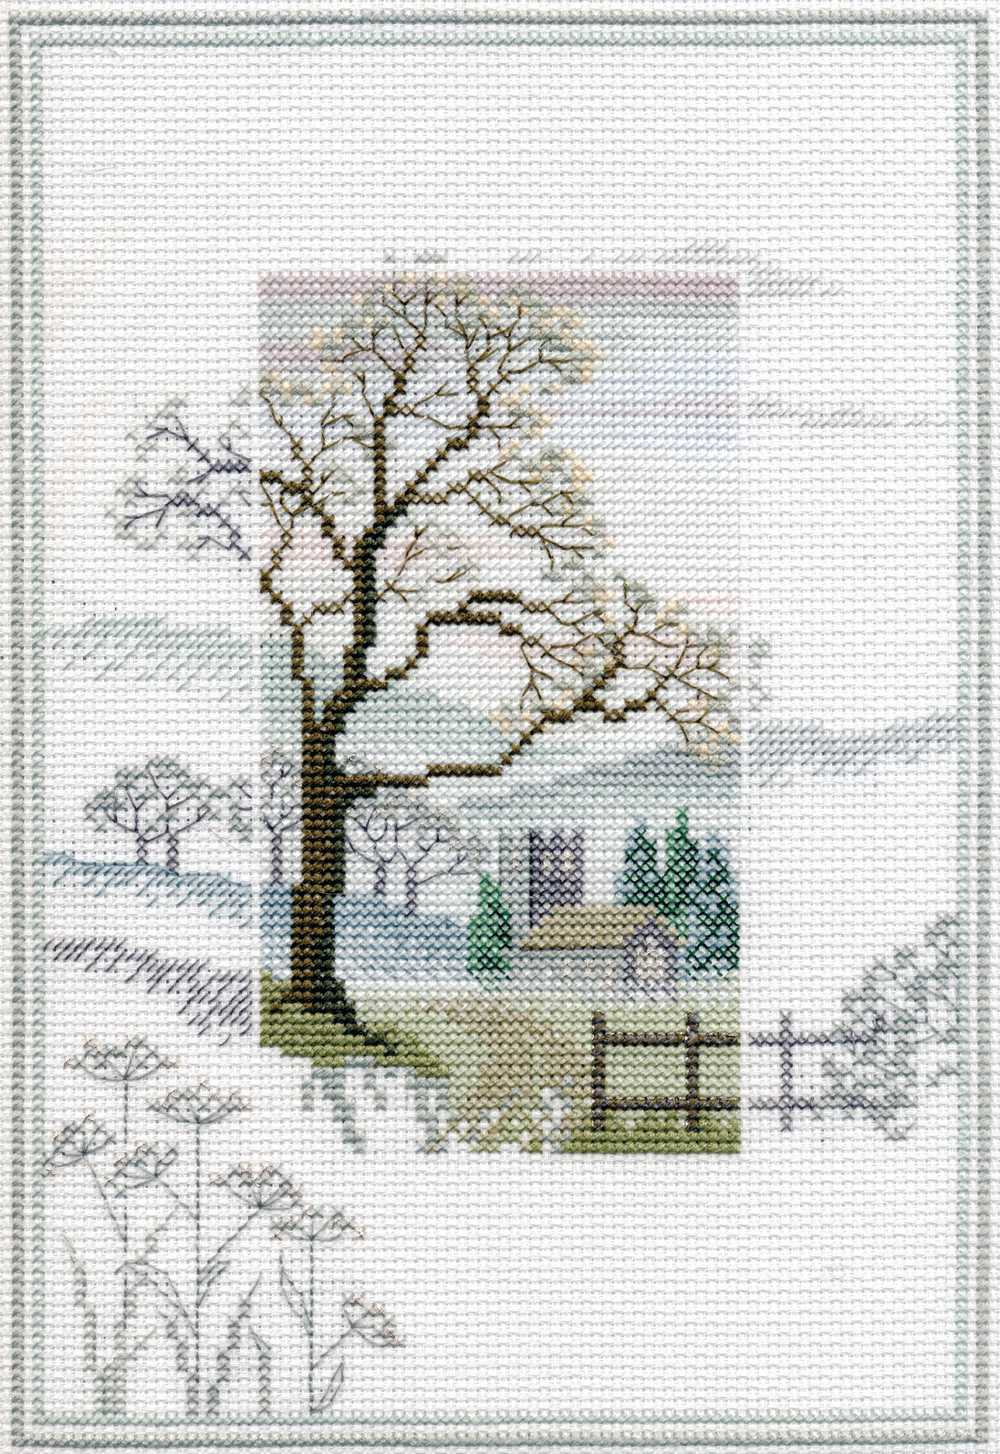 Misty Mornings - Winter Tree Cross Stitch Kit by Derwentwater Designs